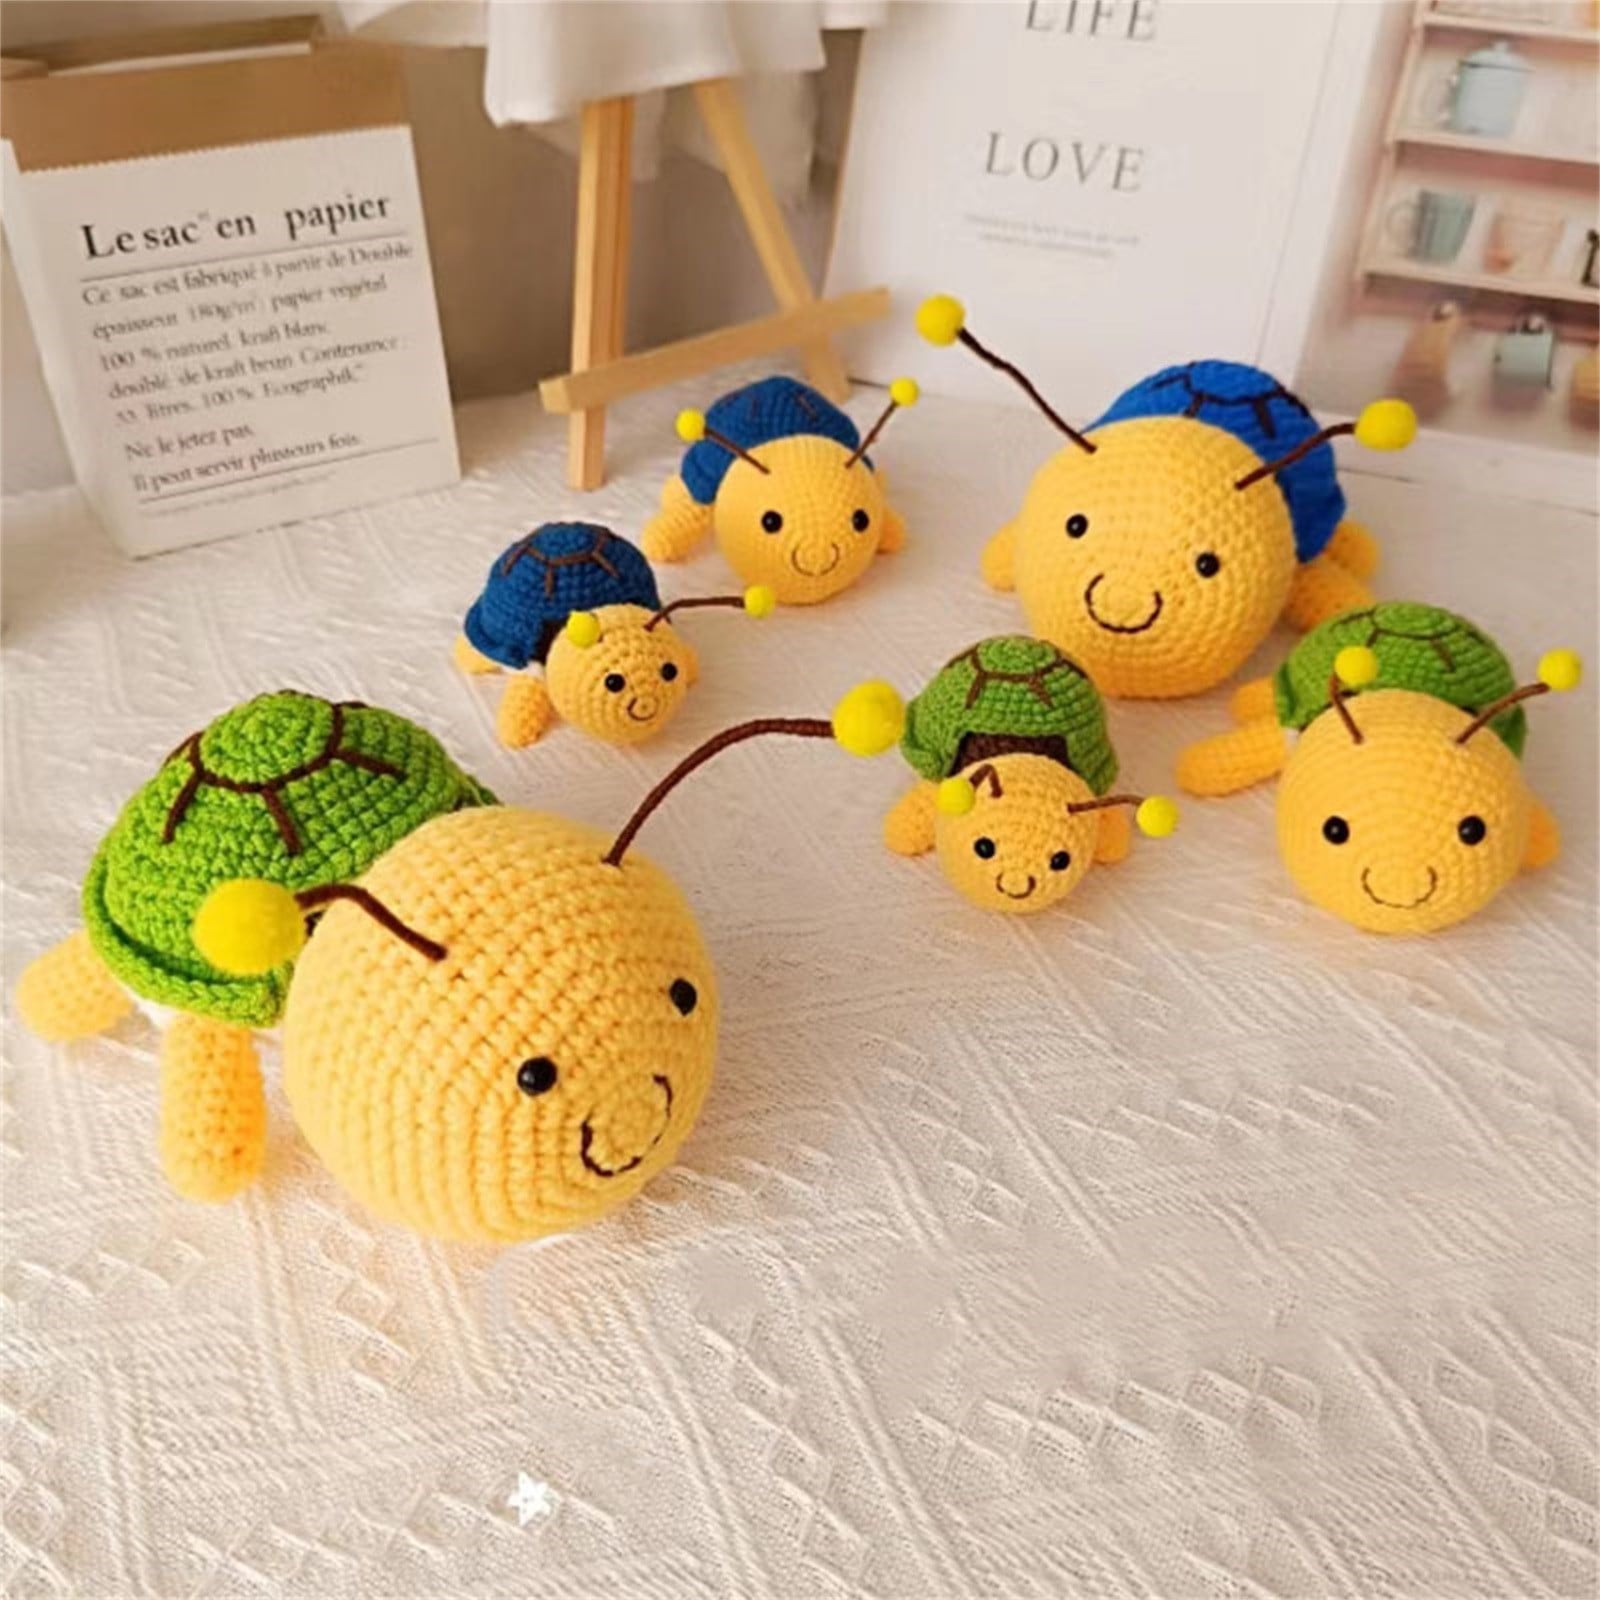 Crochet Kit For Beginners - Turtle Bee Crochet Kit DIY And Complete Crochet  Kit For Beginners - AliExpress